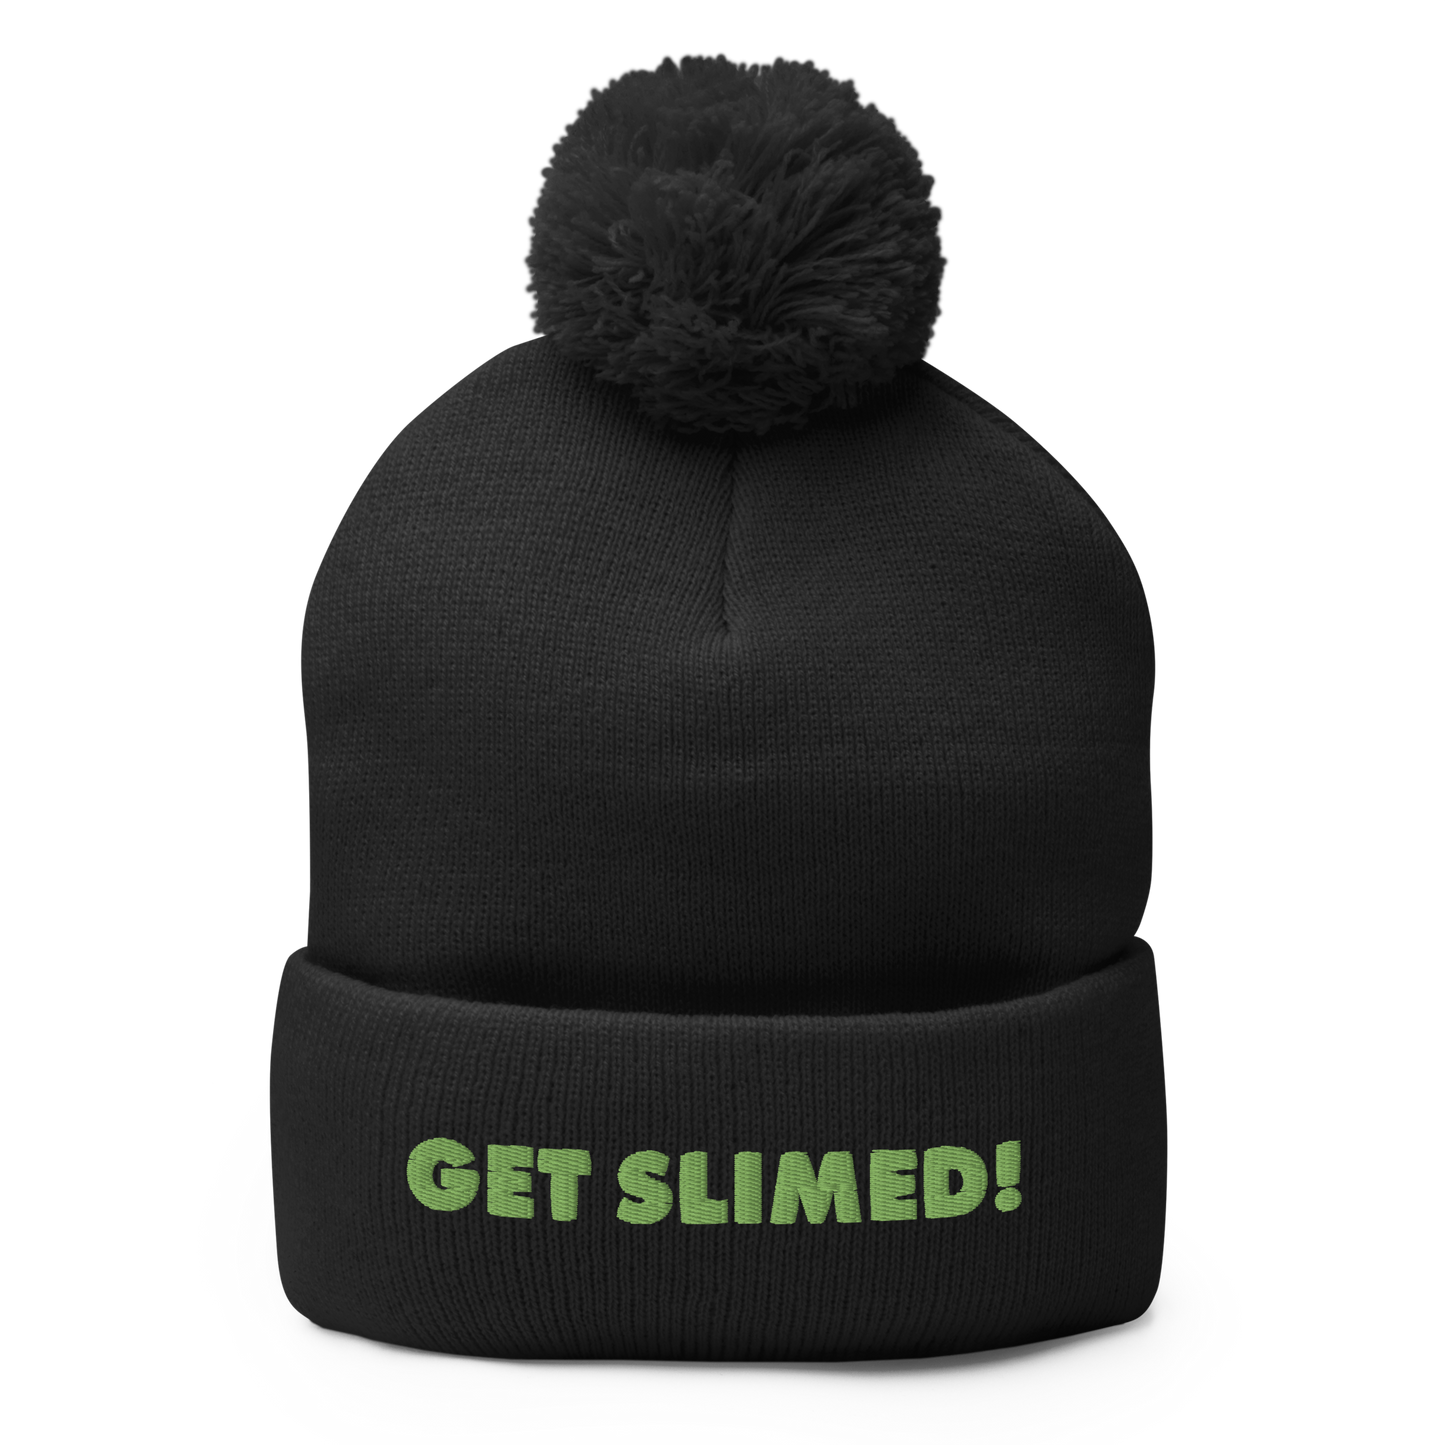 Slime Get Slimed! Pom Pom Knit Beanie